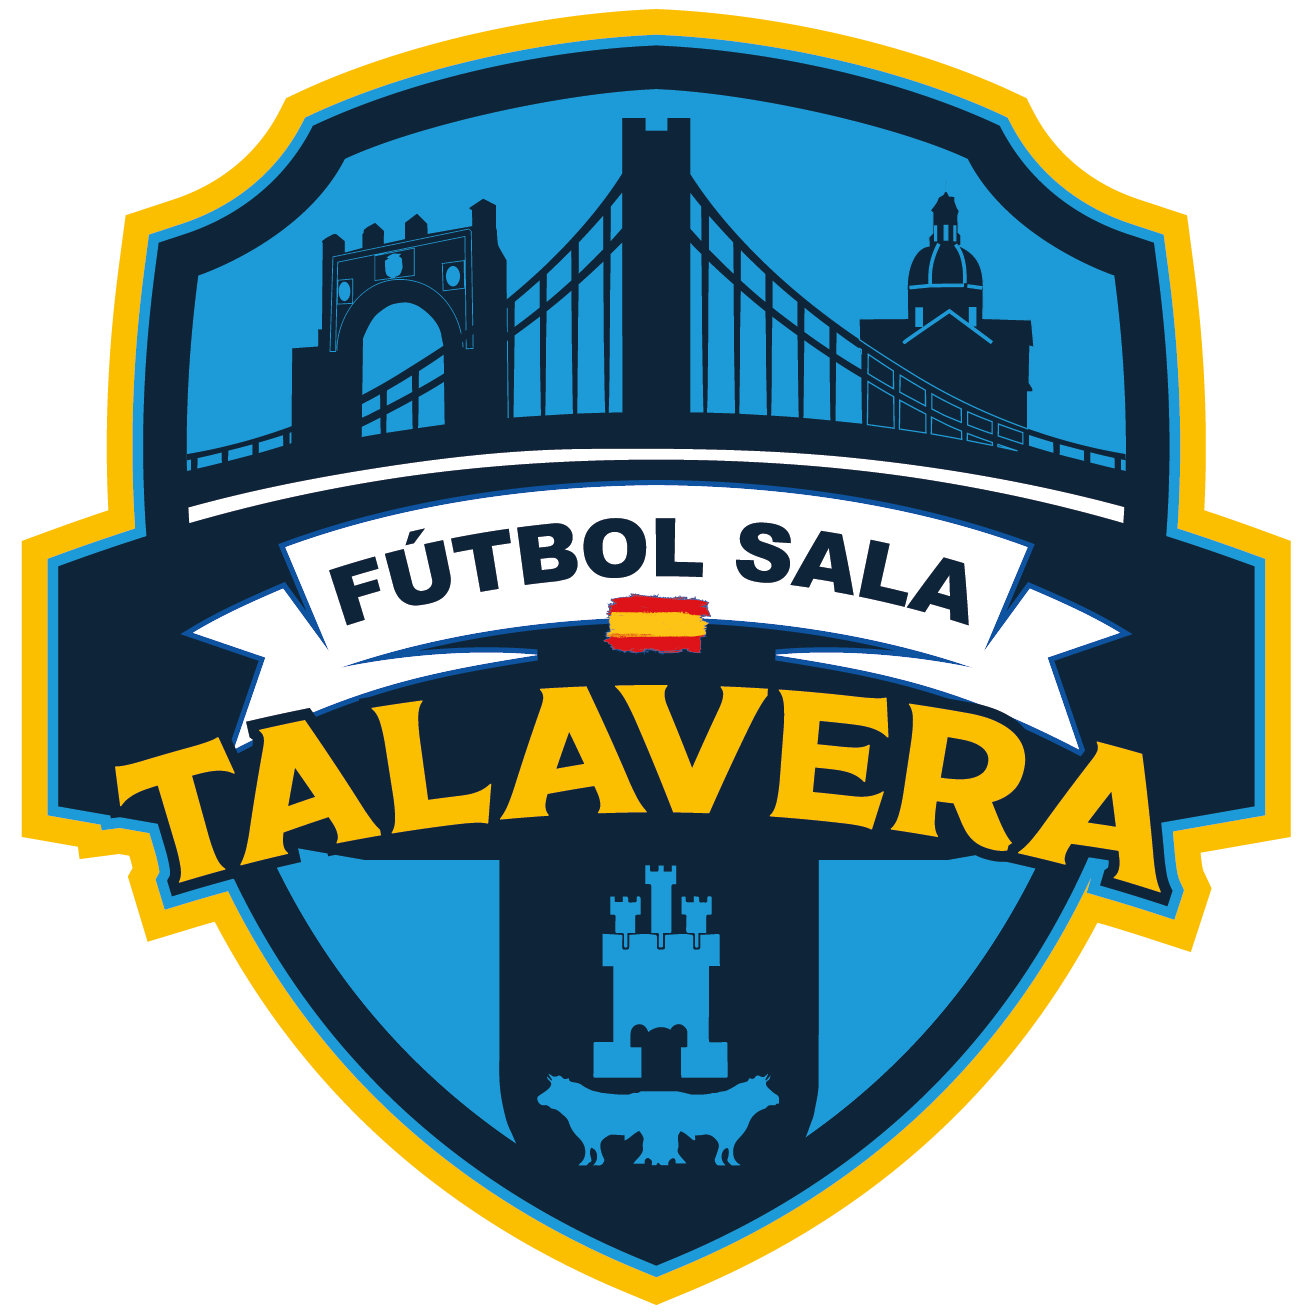 Historia FS Talavera